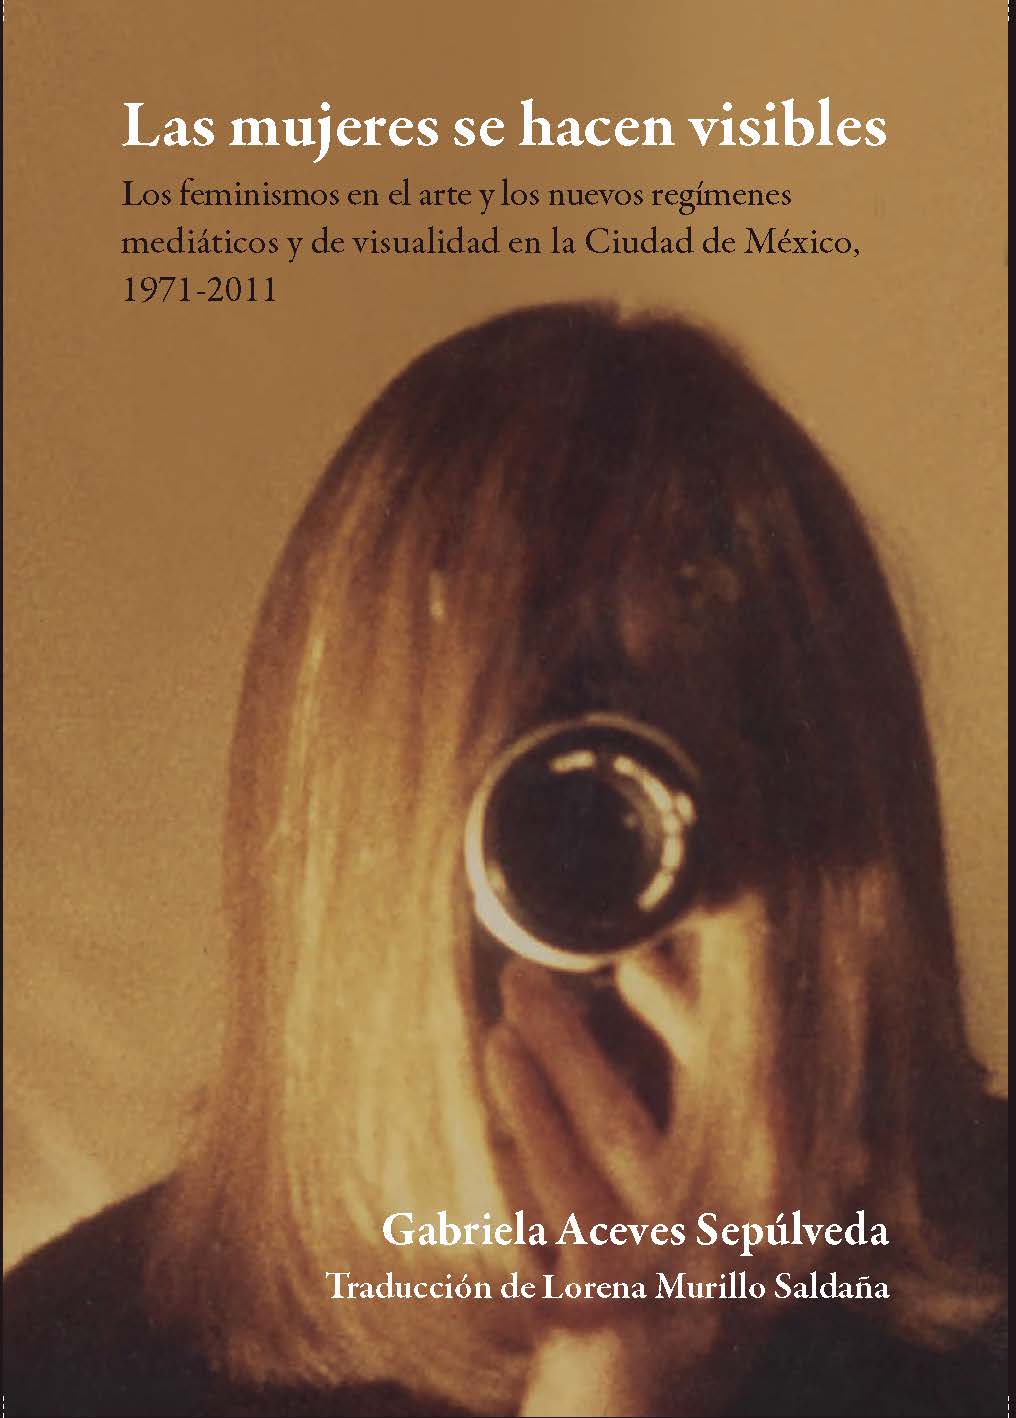 Las mujeres se hacen visibles. Los feminismos en el arte y los nuevos regímenes mediáticos y de visualidad en la Ciudad de México, 1971-2011